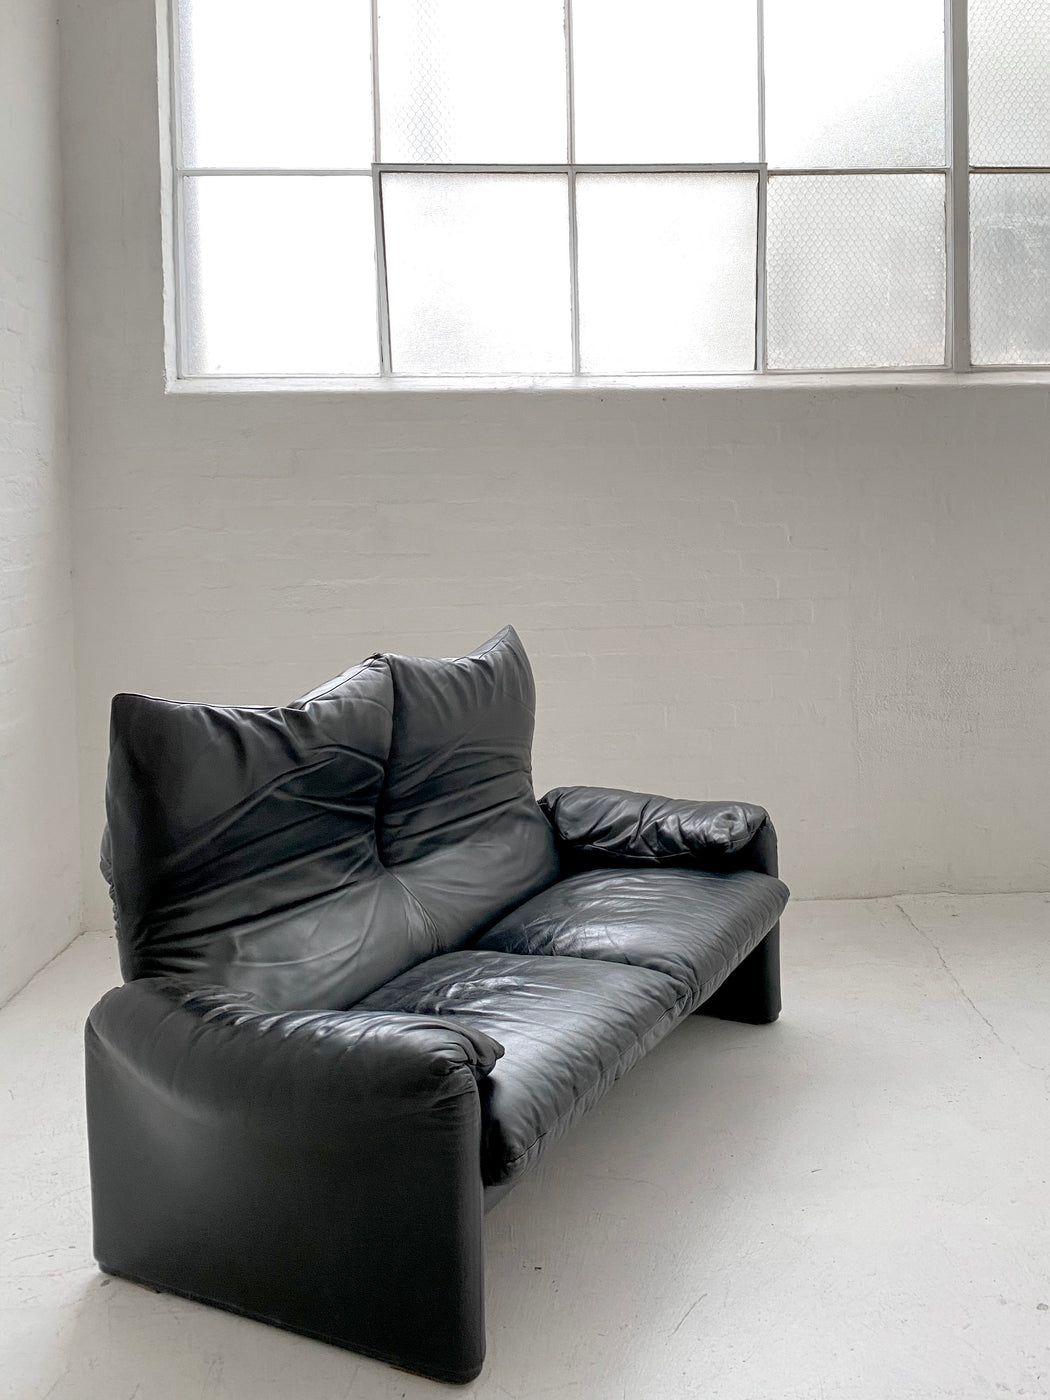 Vico Magistretti 'Maralunga' Leather Sofa